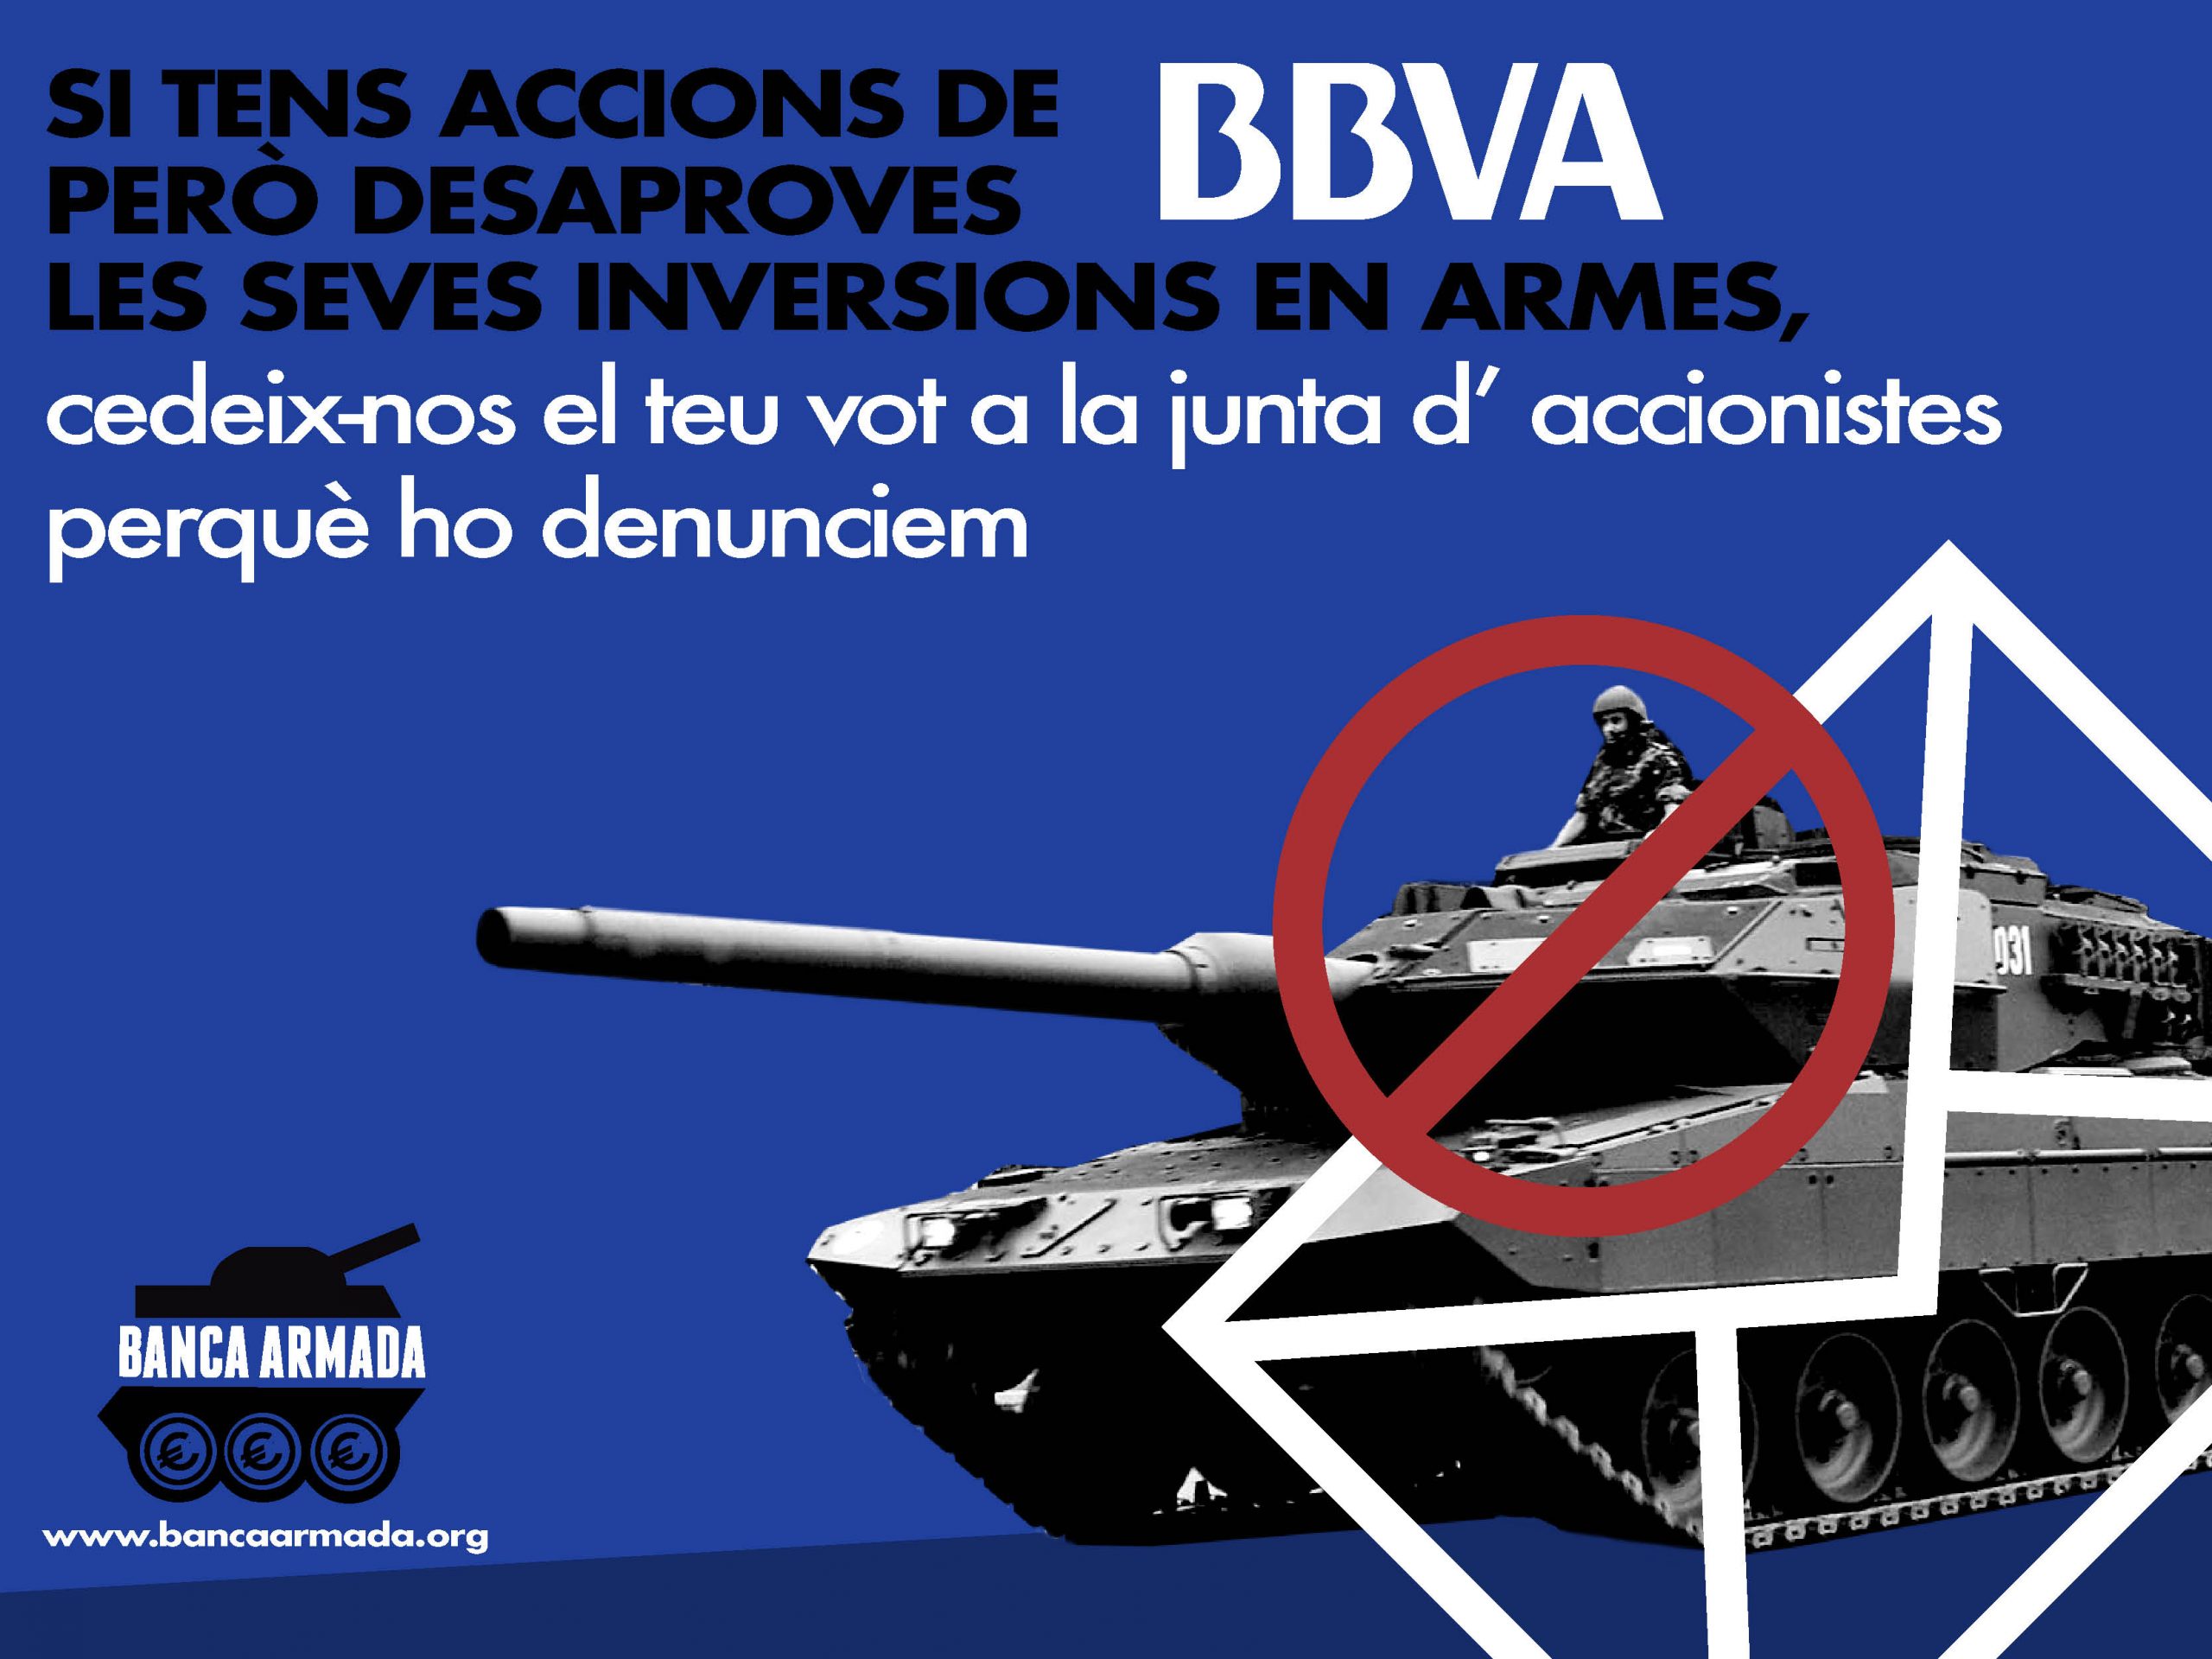 Petició d’accions per denunciar les inversions en armes a la junta d’accionistes 2018 del BBVA